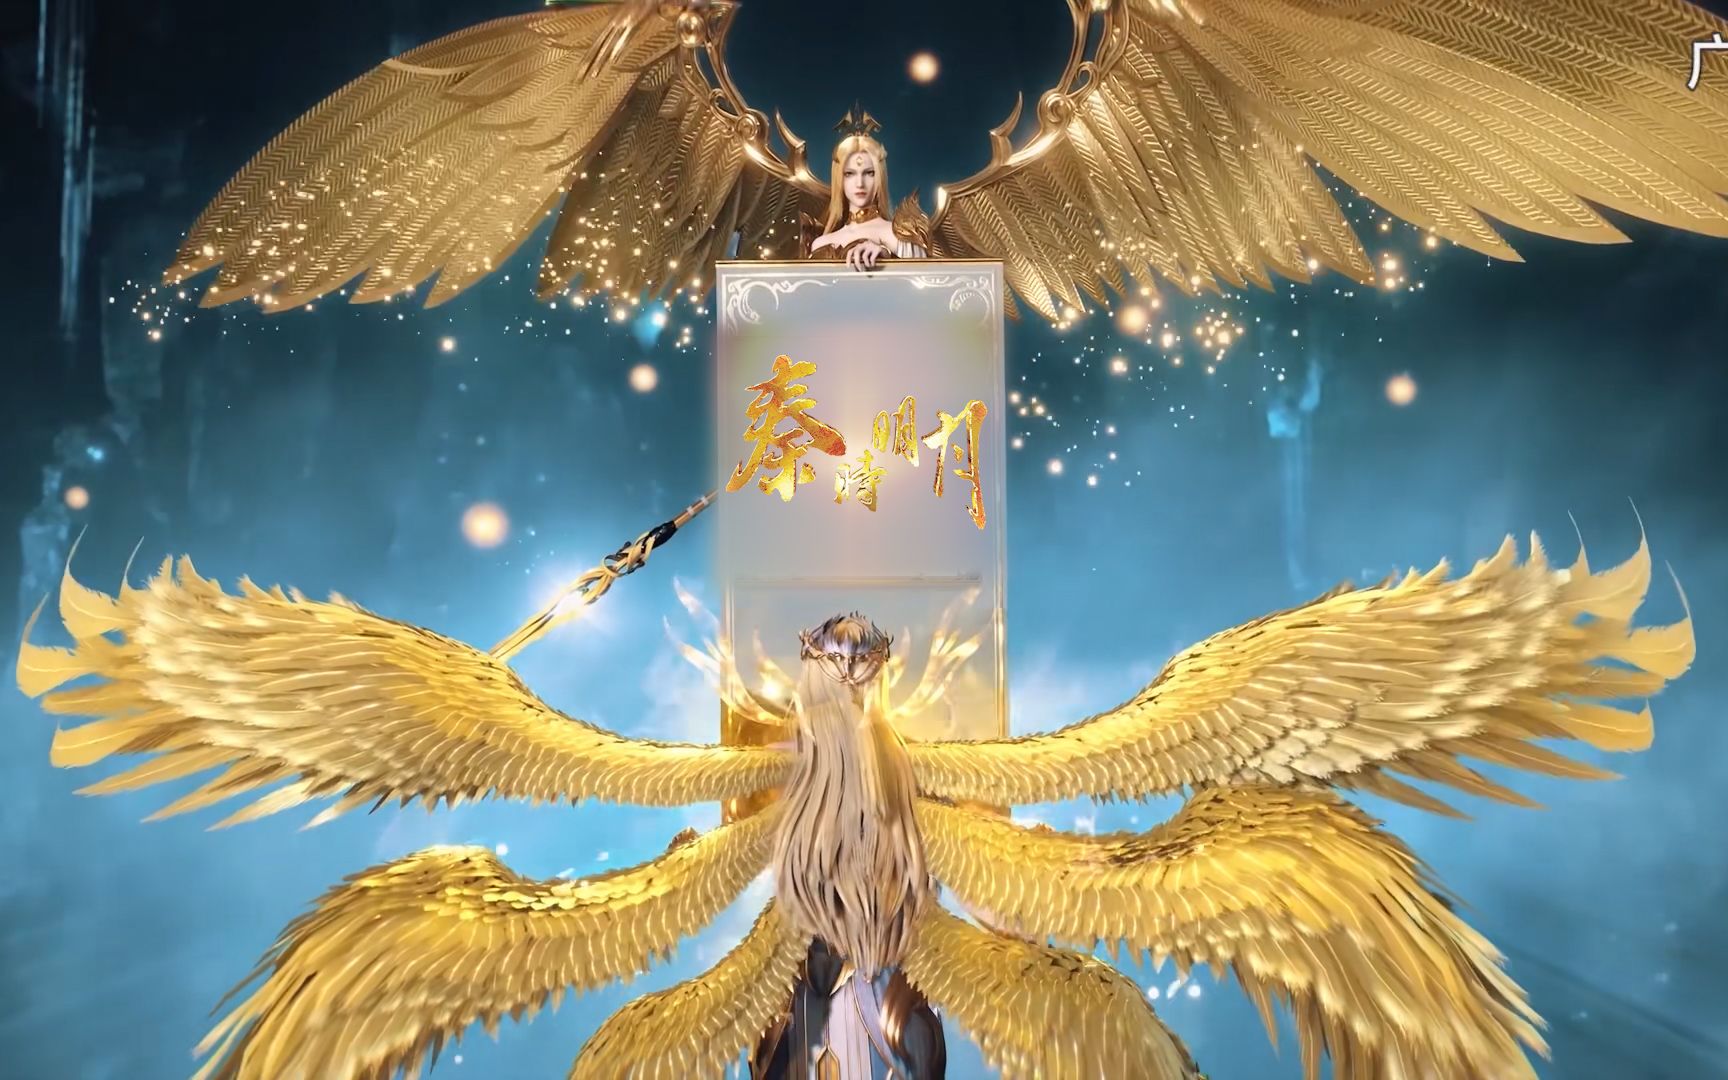 【4k臻享】天使圣王×千仞雪官方联动,玄机双天使降临!